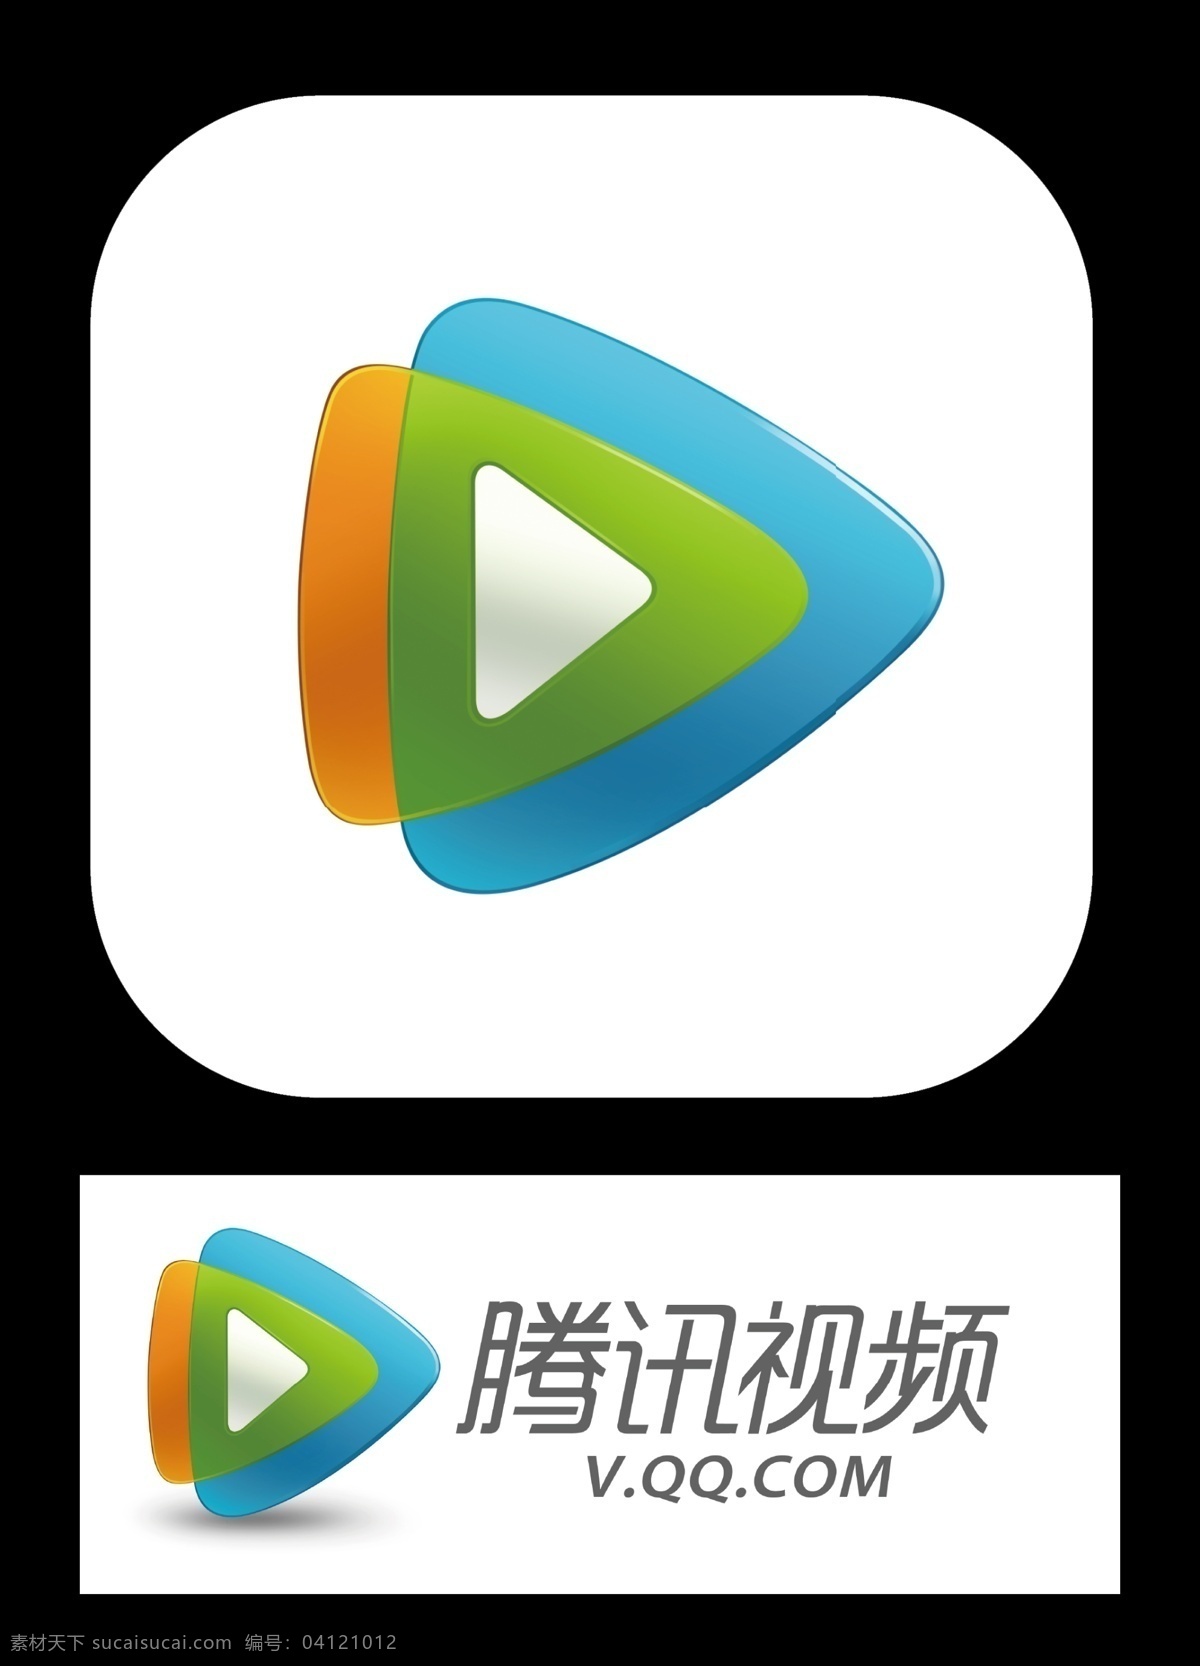 腾讯视频标志 腾讯 视频 logo 腾讯视频标识 腾讯视频图标